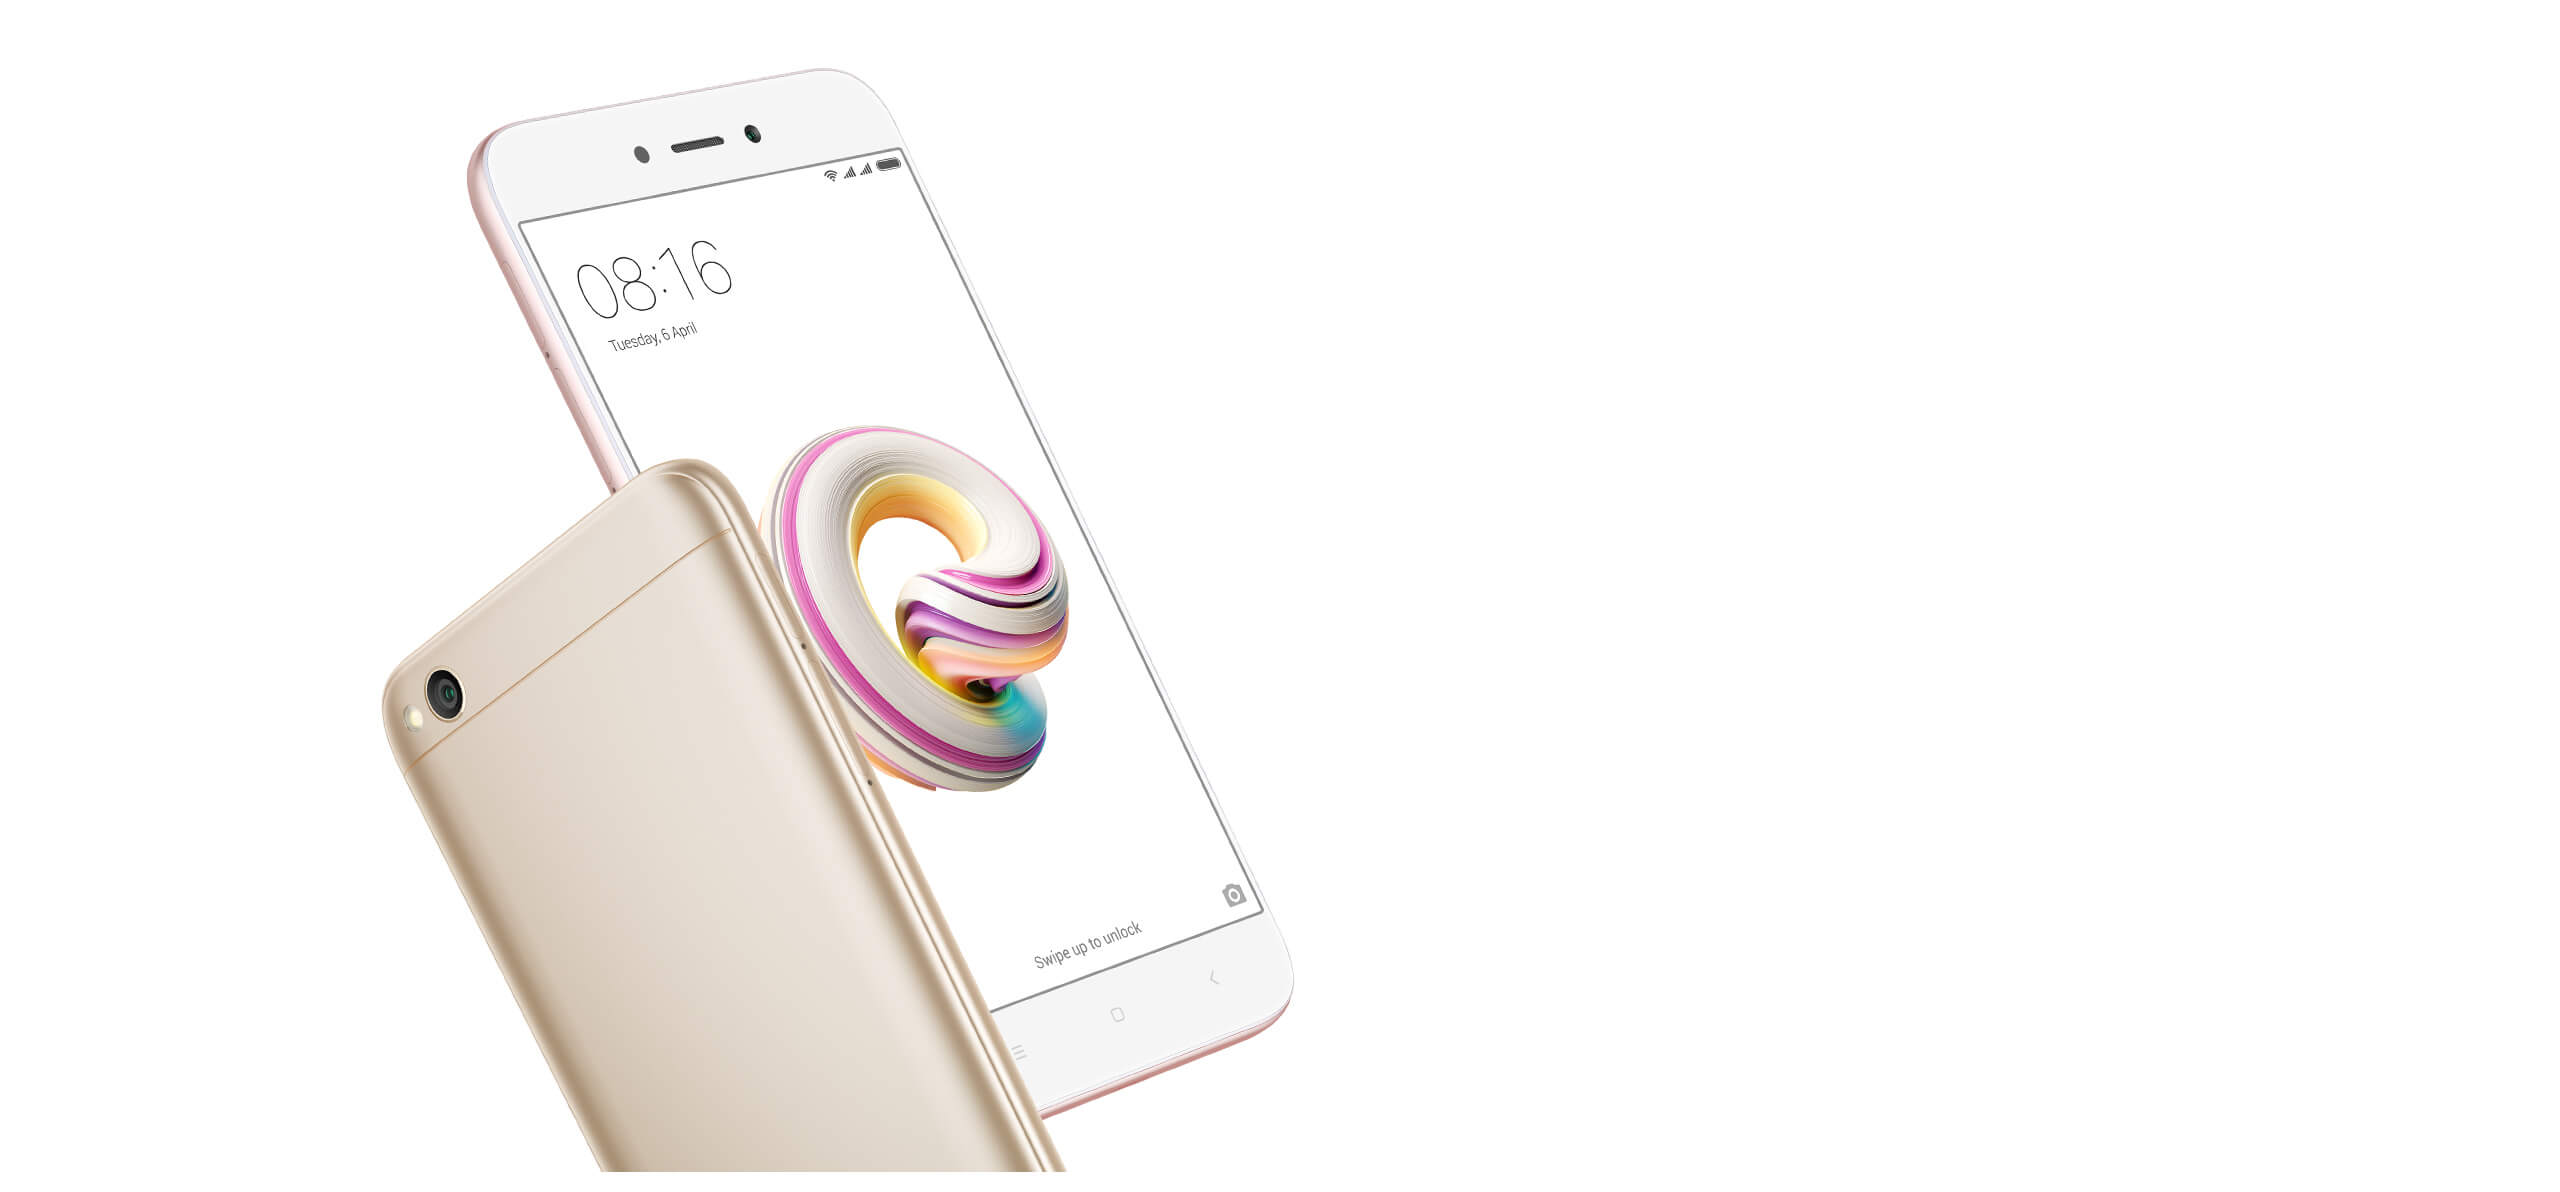 Xiaomi Redmi 5 meistverkaufte Android-Smartphone in März 2018